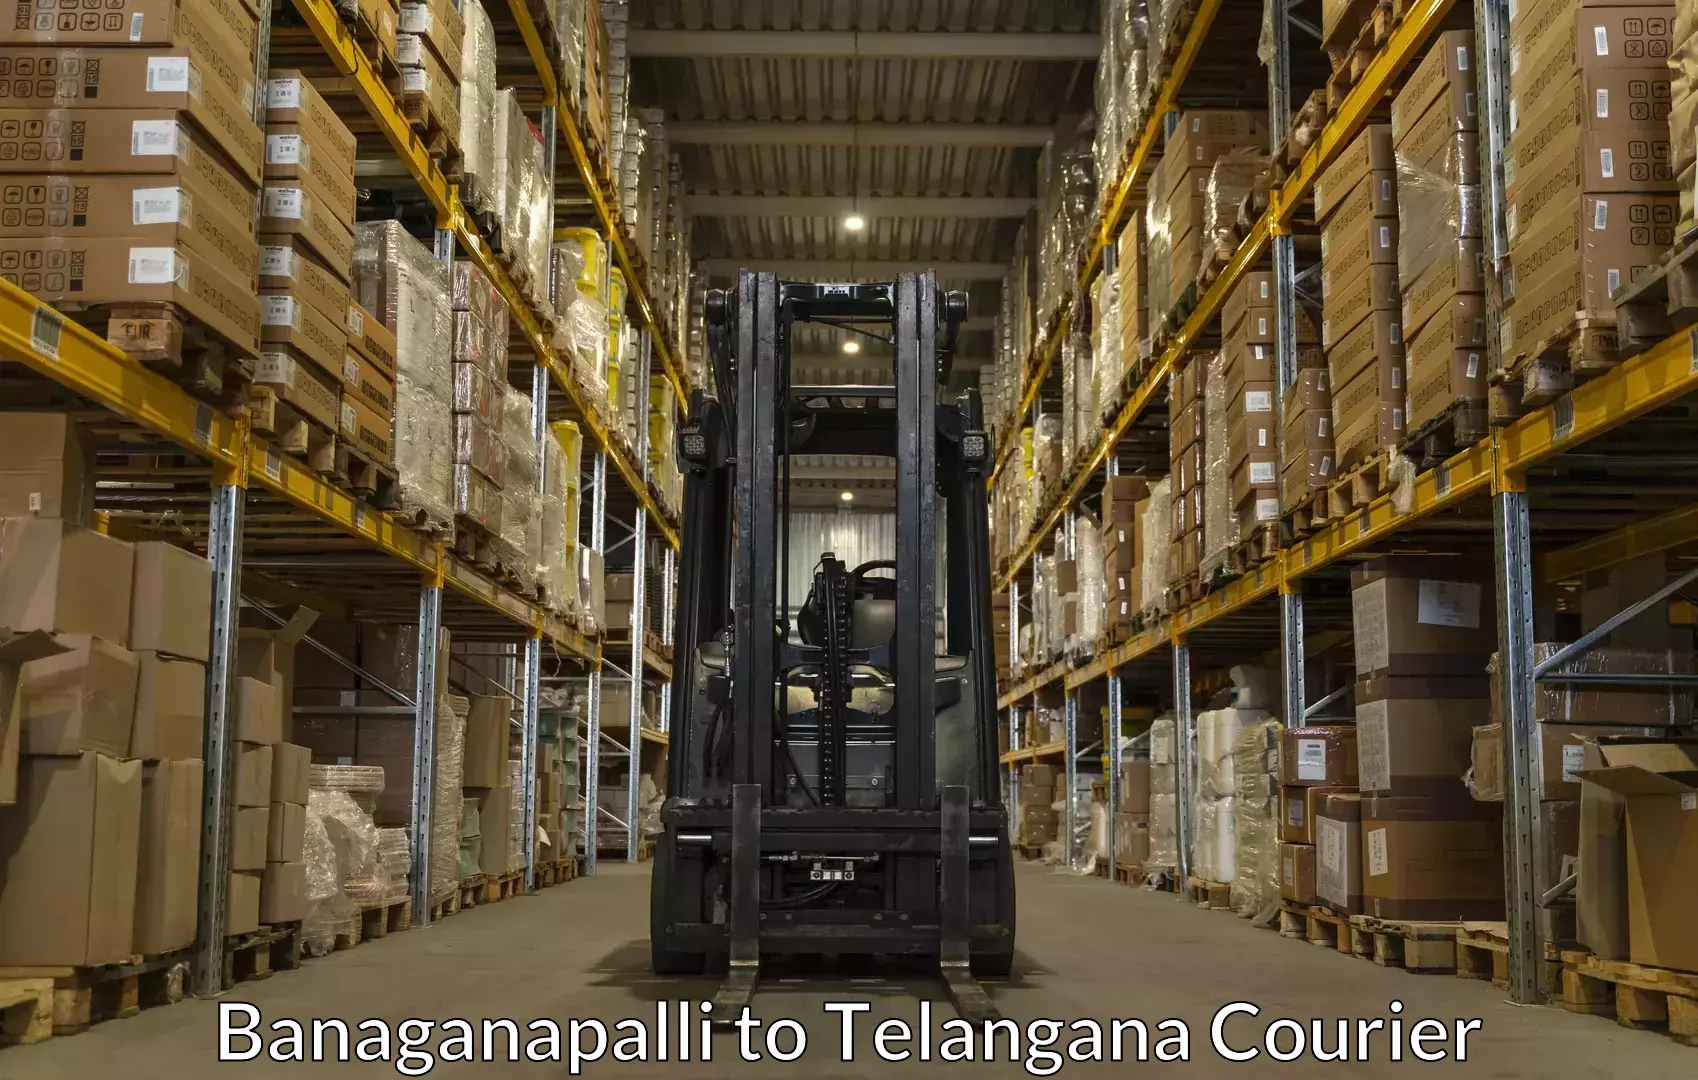 Efficient relocation services Banaganapalli to Karimnagar